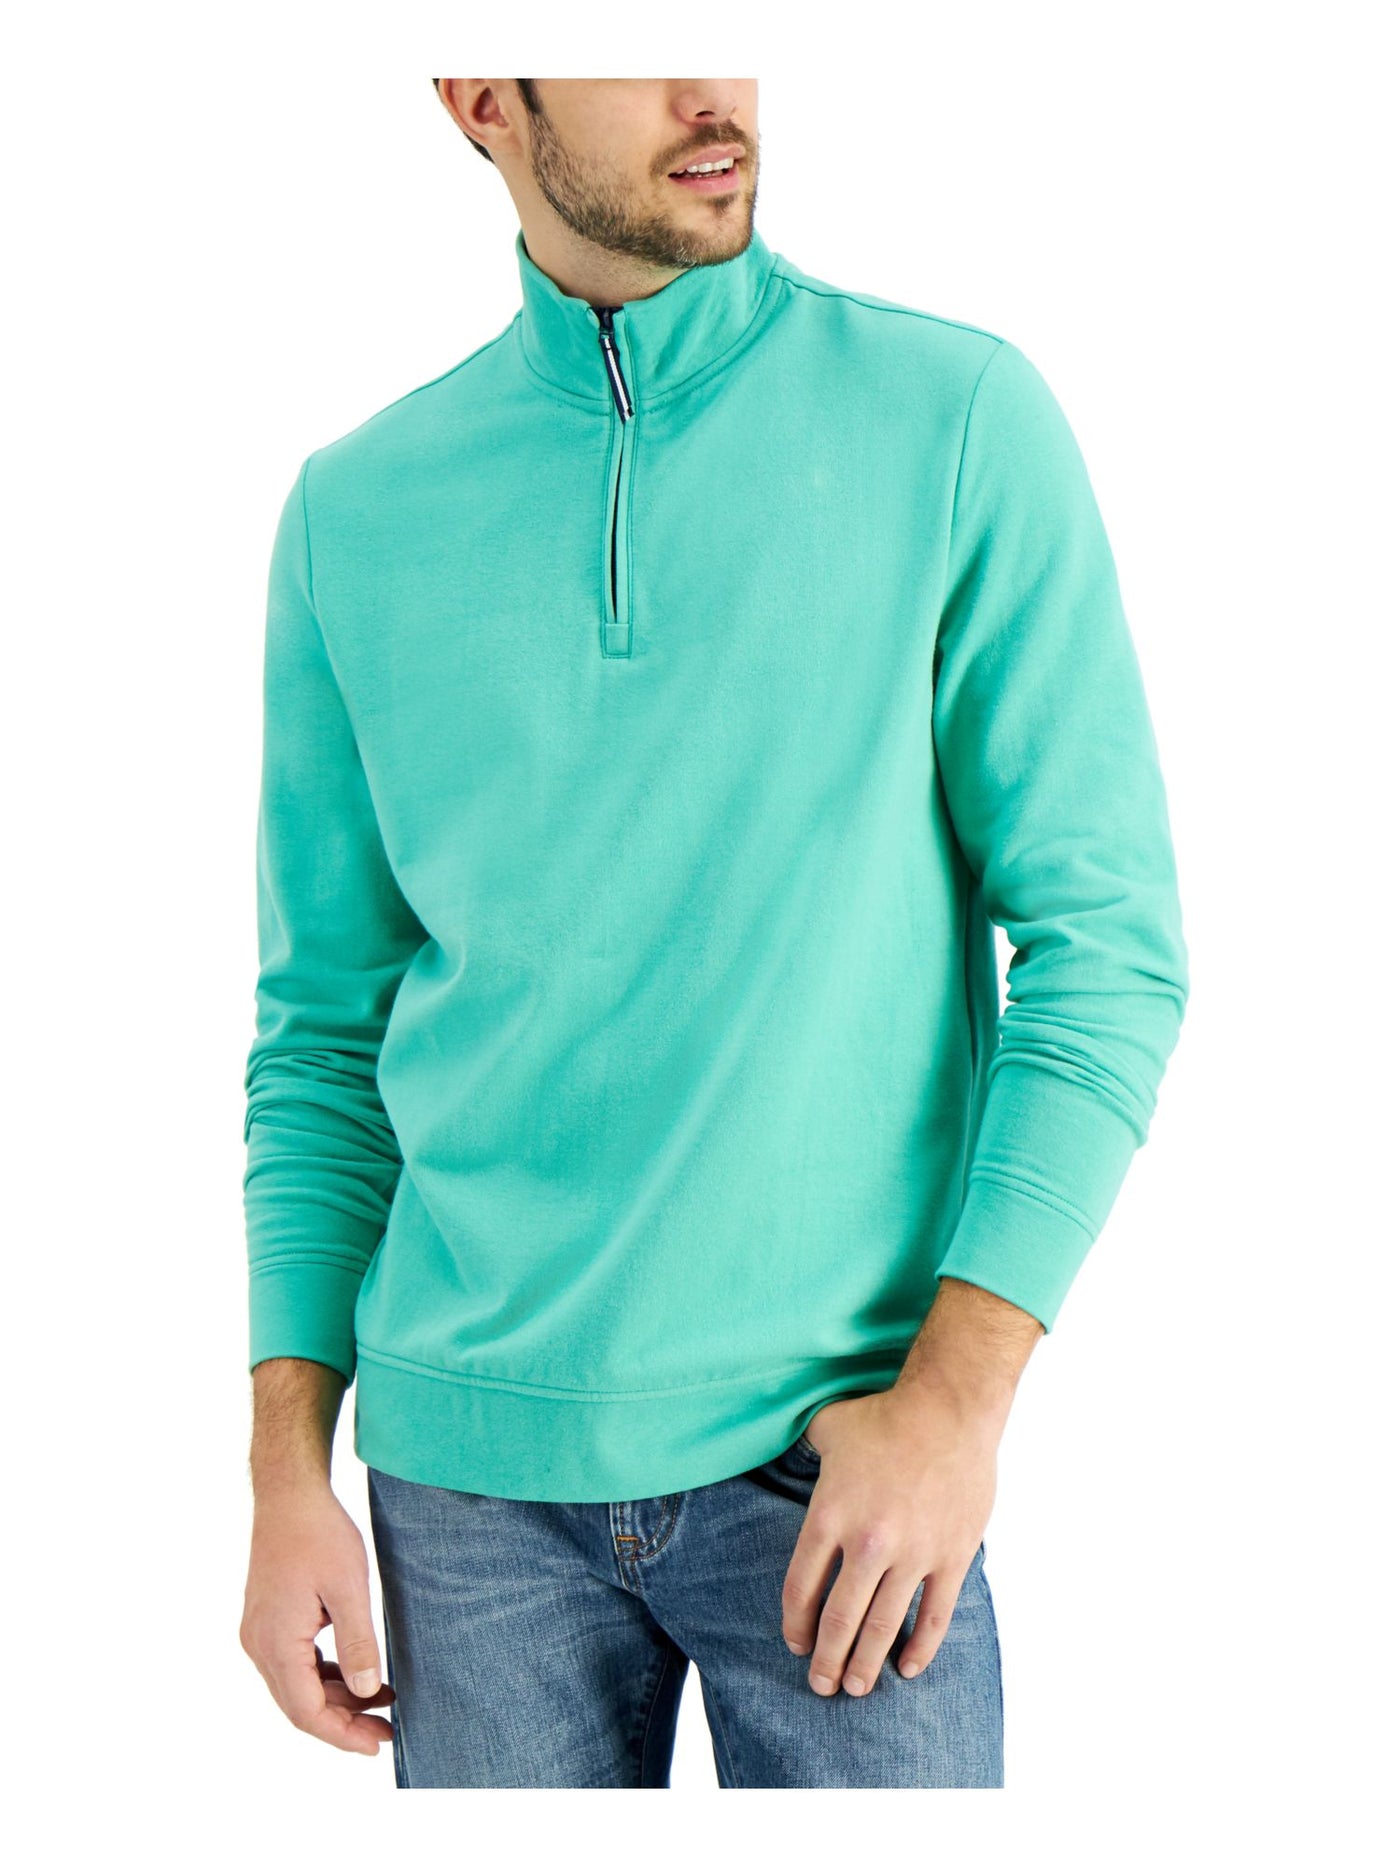 CLUBROOM Mens Green Long Sleeve Mock Neck Classic Fit Quarter-Zip Fleece Sweatshirt XXL